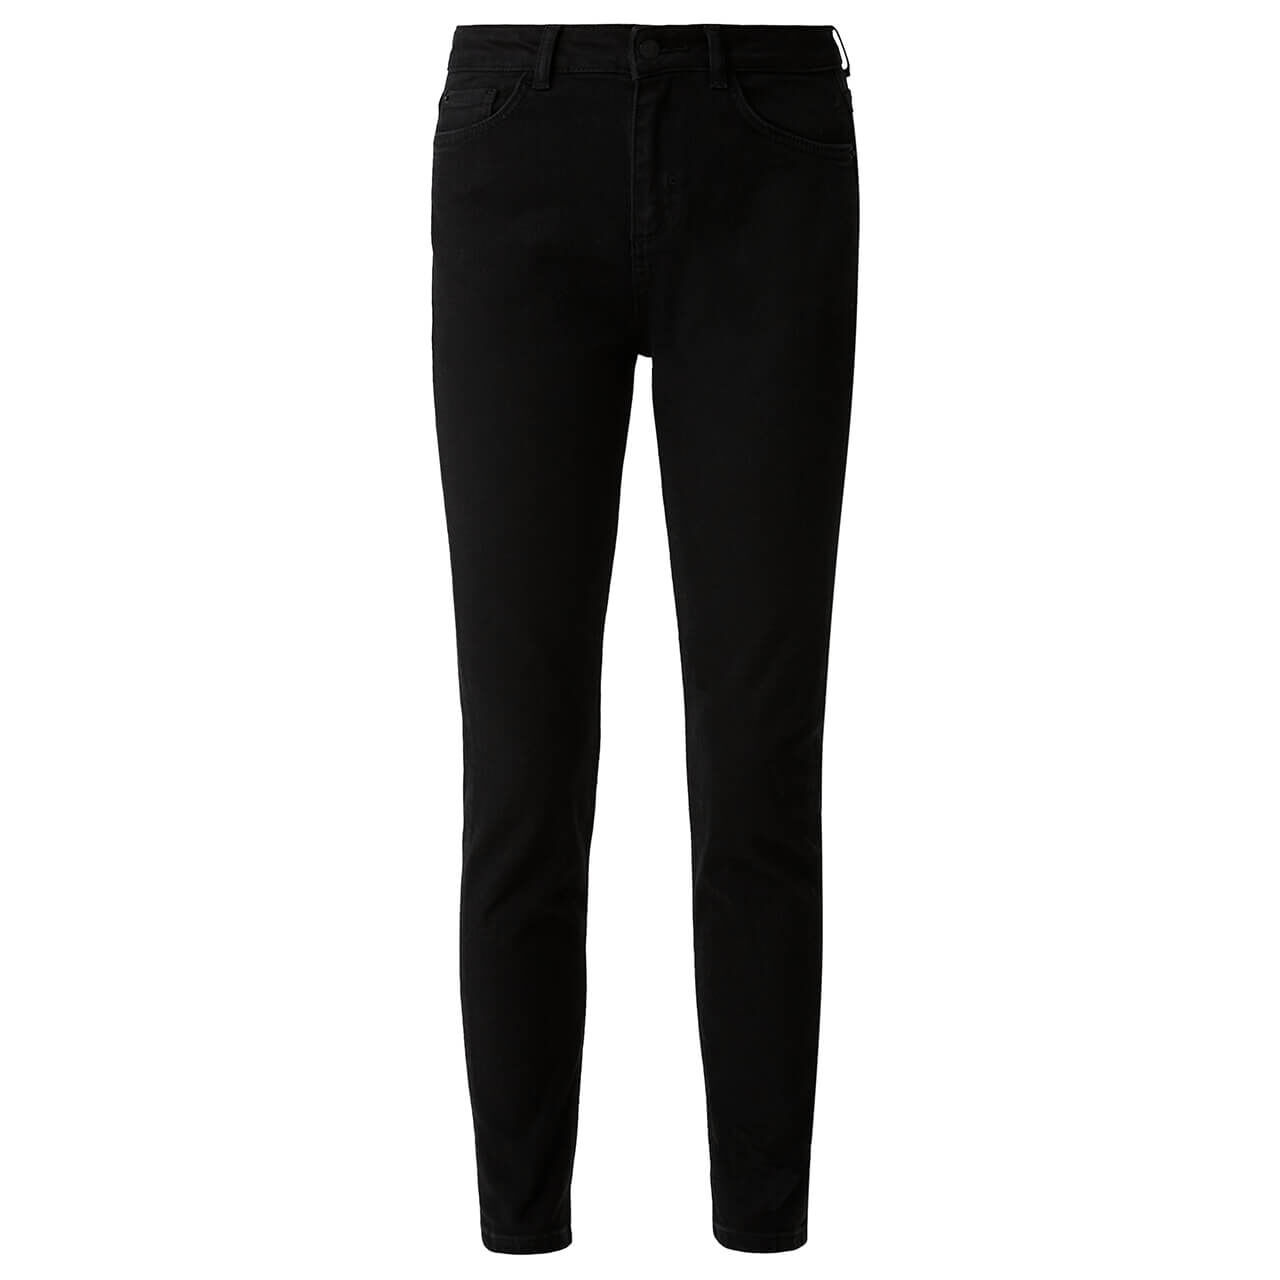 Comma Damen Skinny Jeans black